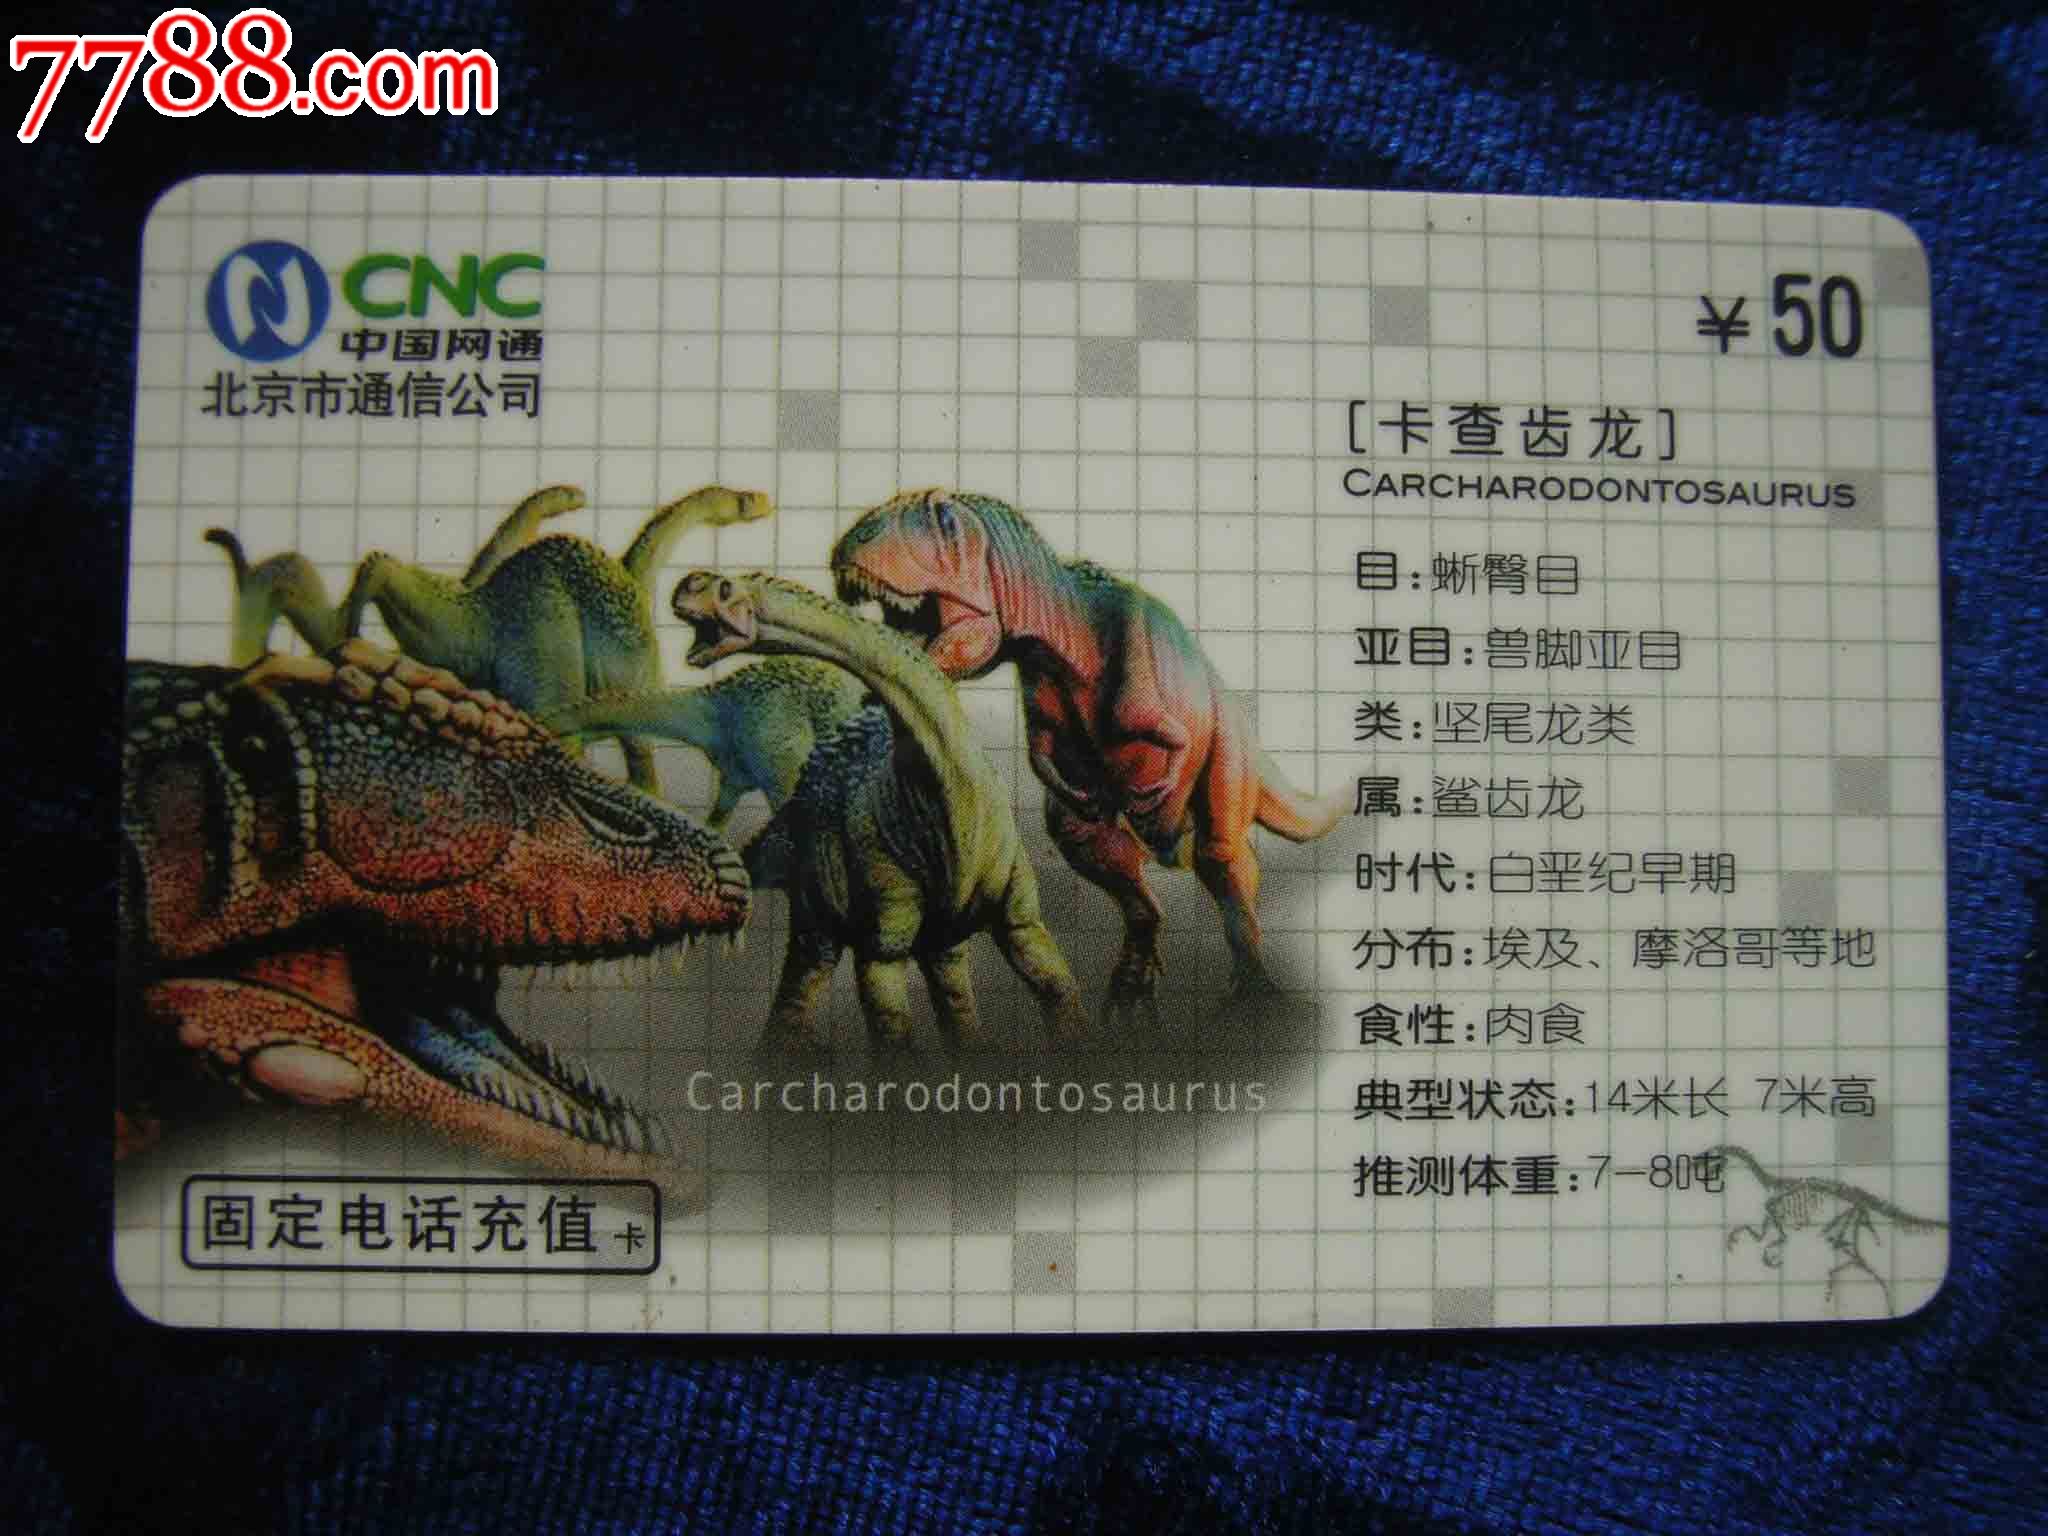 恐龙资料卡内容图片